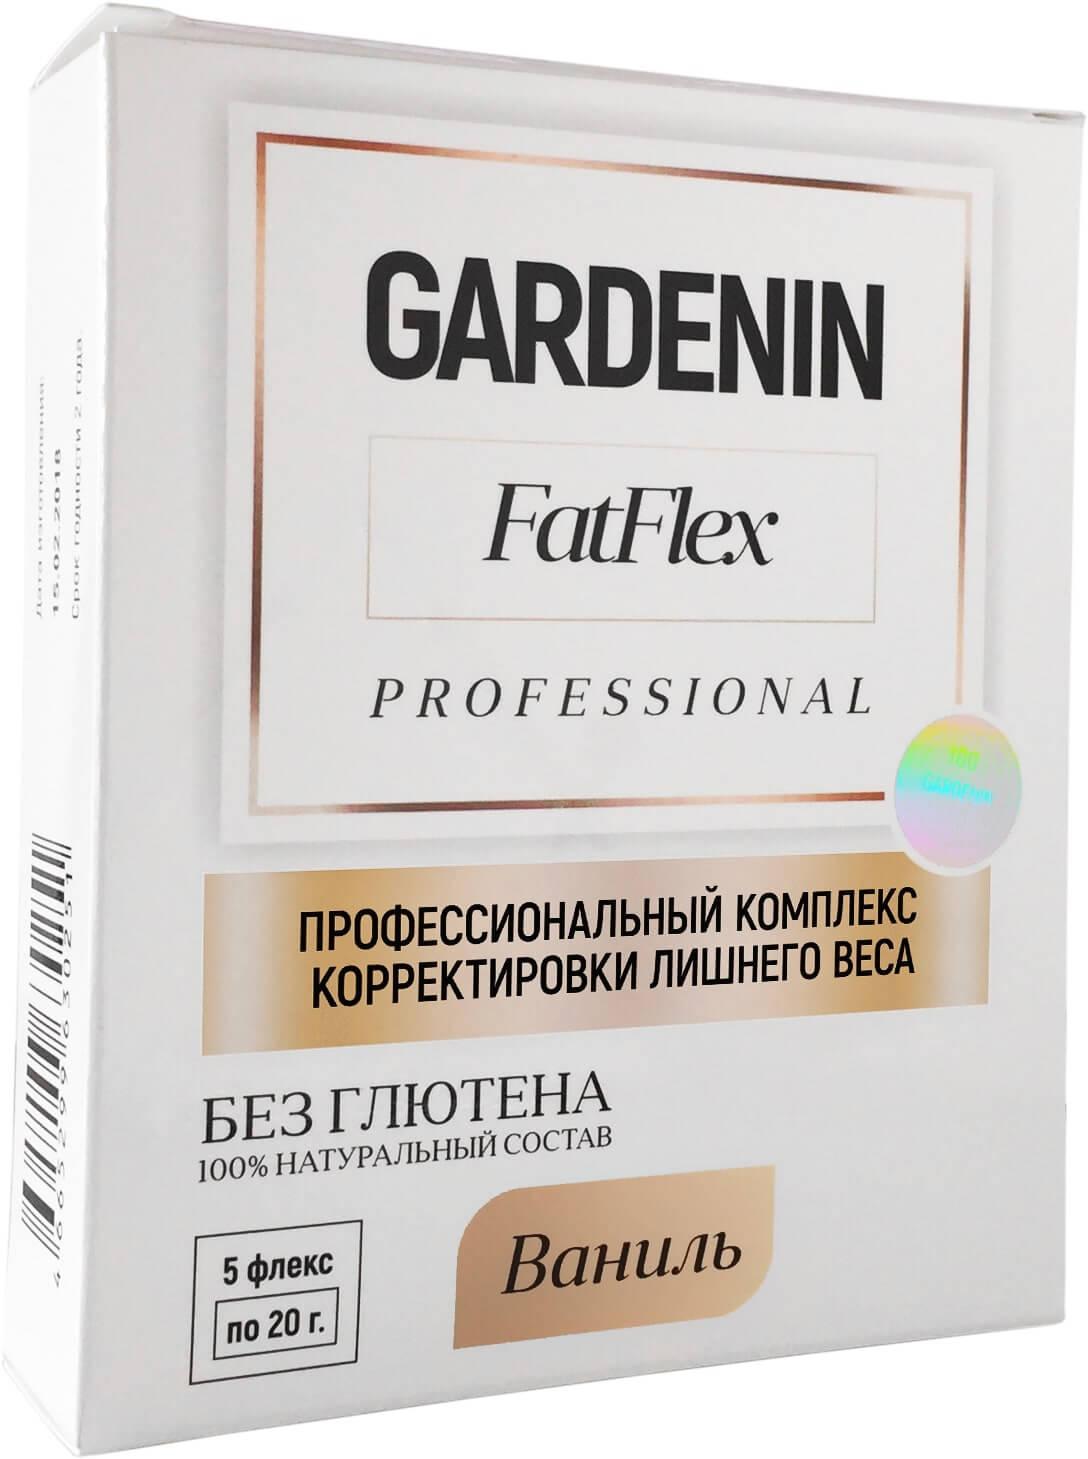 Купить gardenin fatflex 